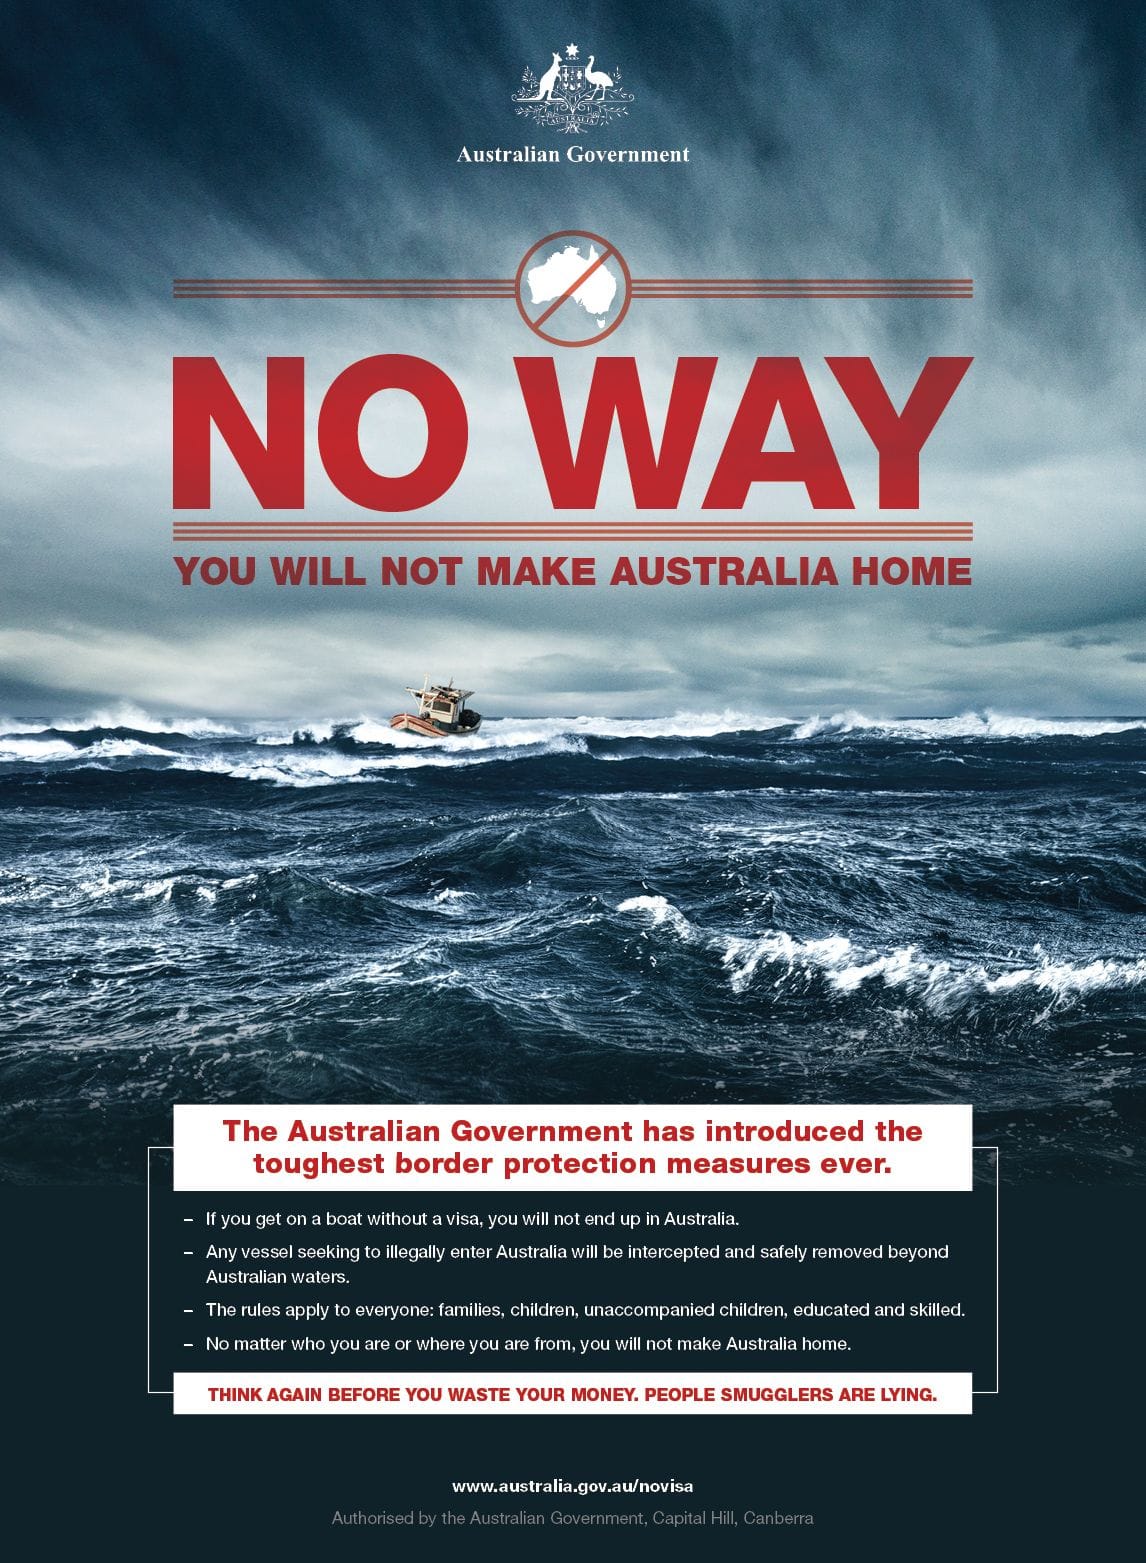 Plakatkampagne der australischen Regierung im Jahr 2013.